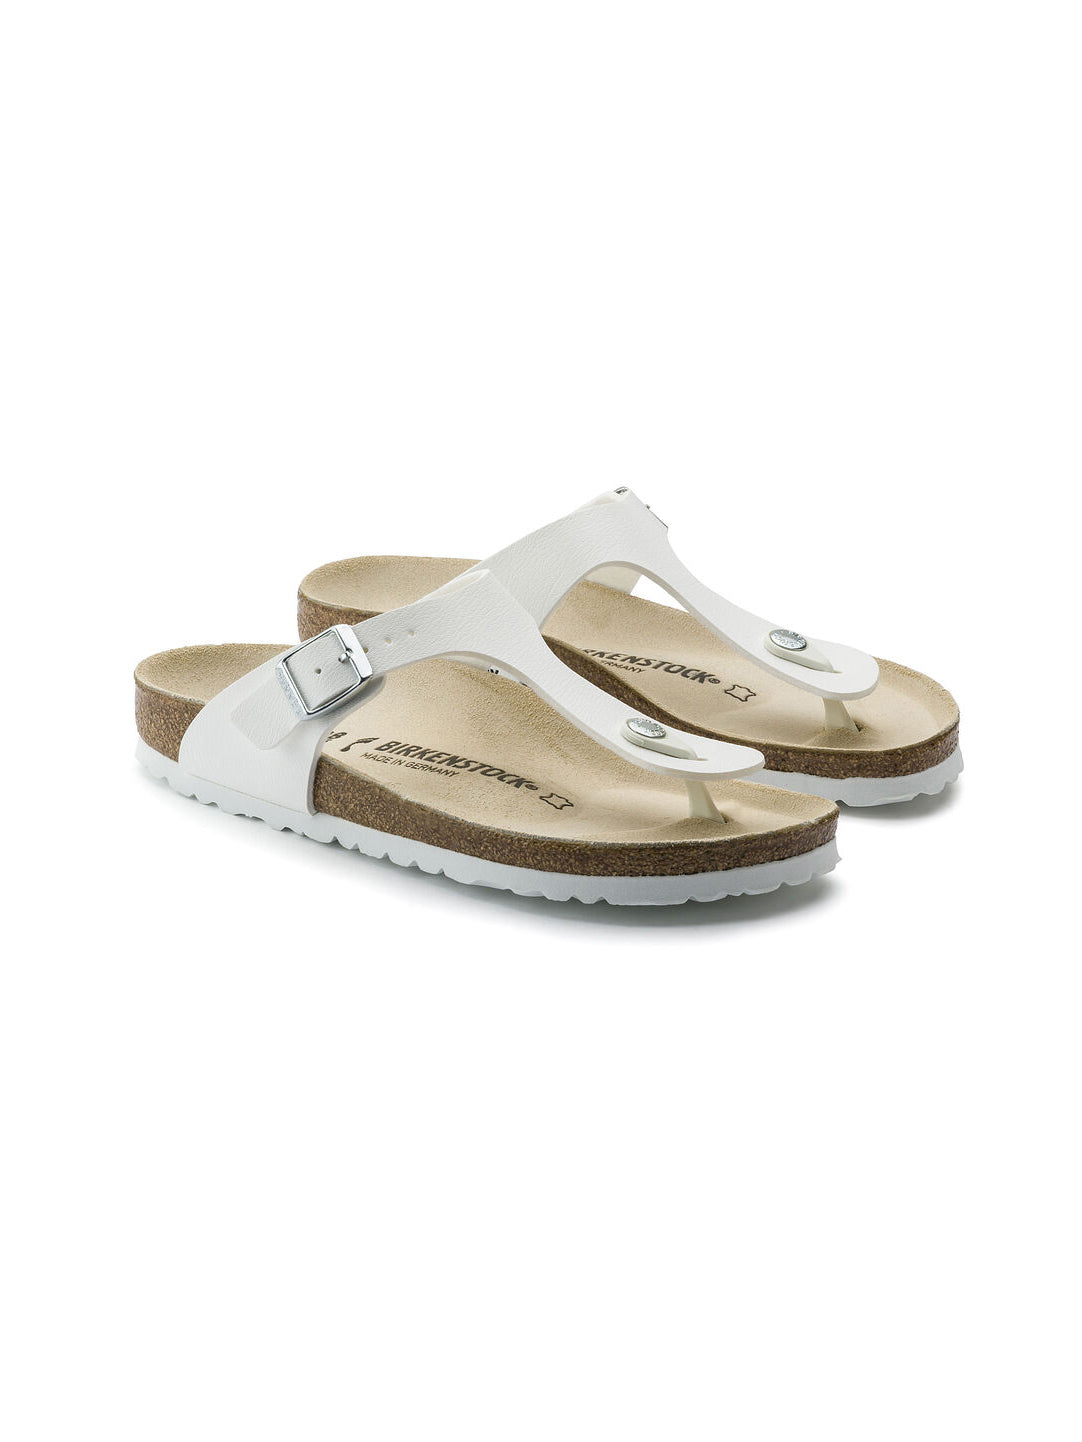 Gizeh sandal, white